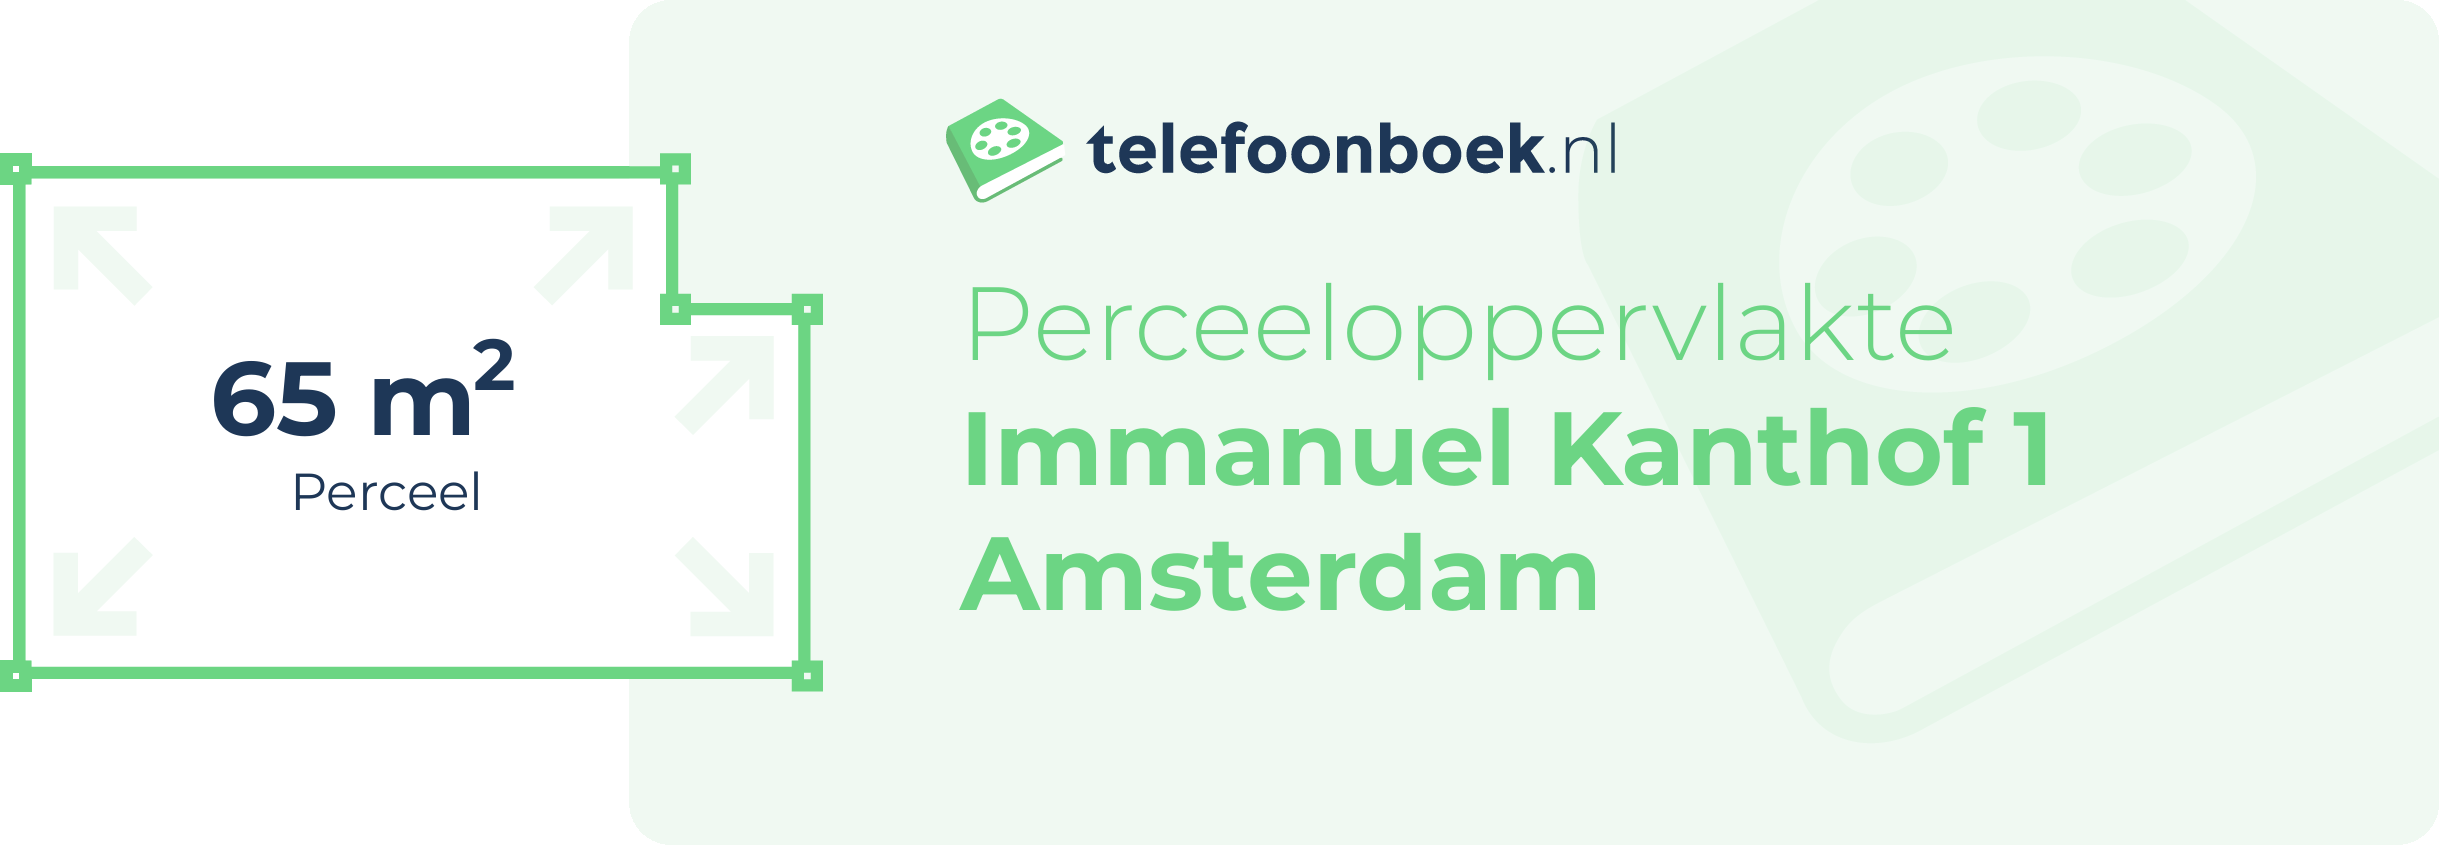 Perceeloppervlakte Immanuel Kanthof 1 Amsterdam